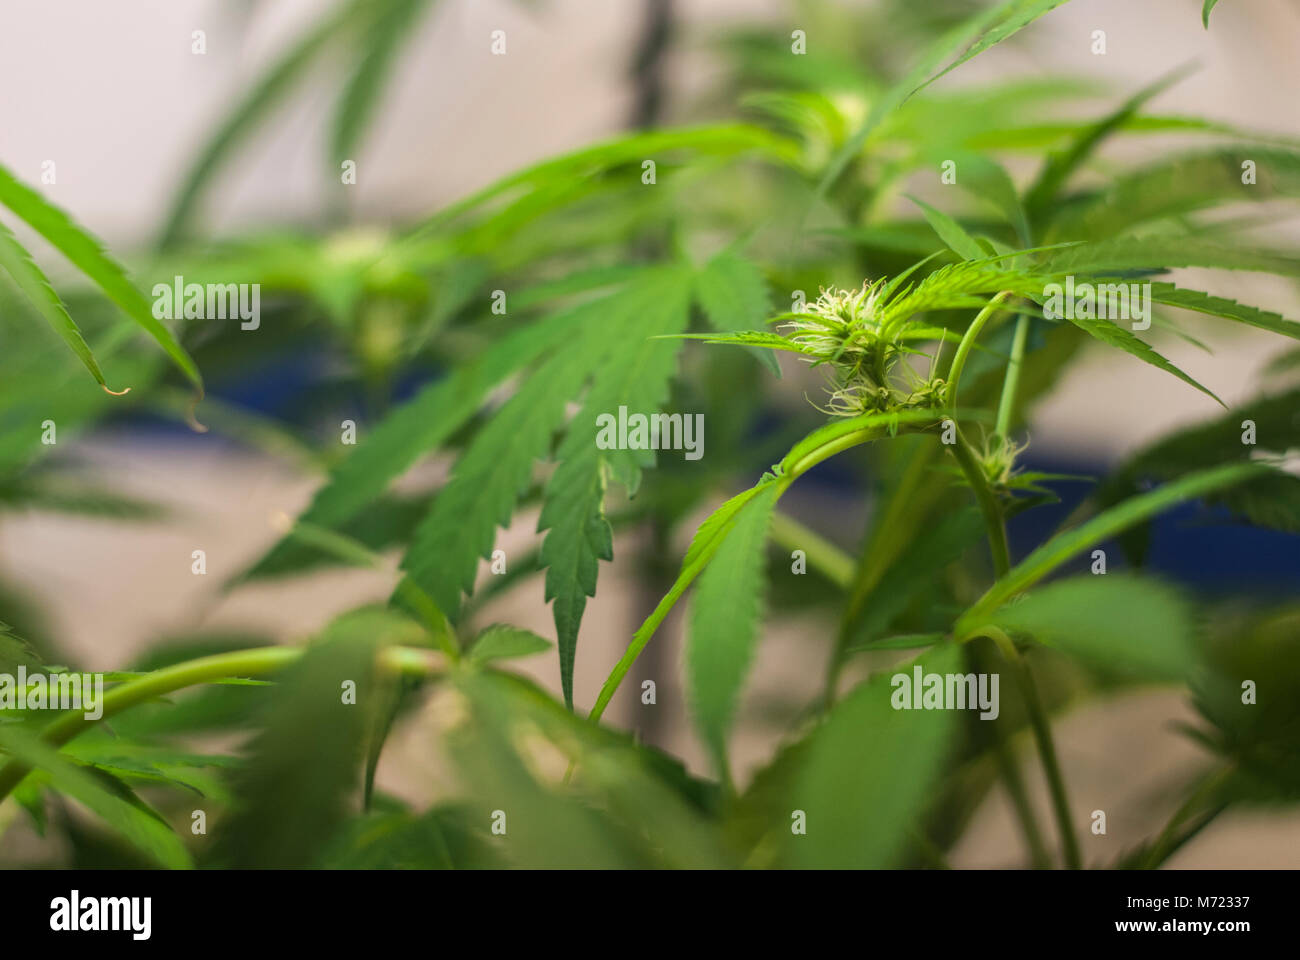 Cannabis sativa indica floraison plante hybride de la marijuana pousse son premier pistils blancs dans la première partie de l'étape de fleurs dans une culture en intérieure. Banque D'Images